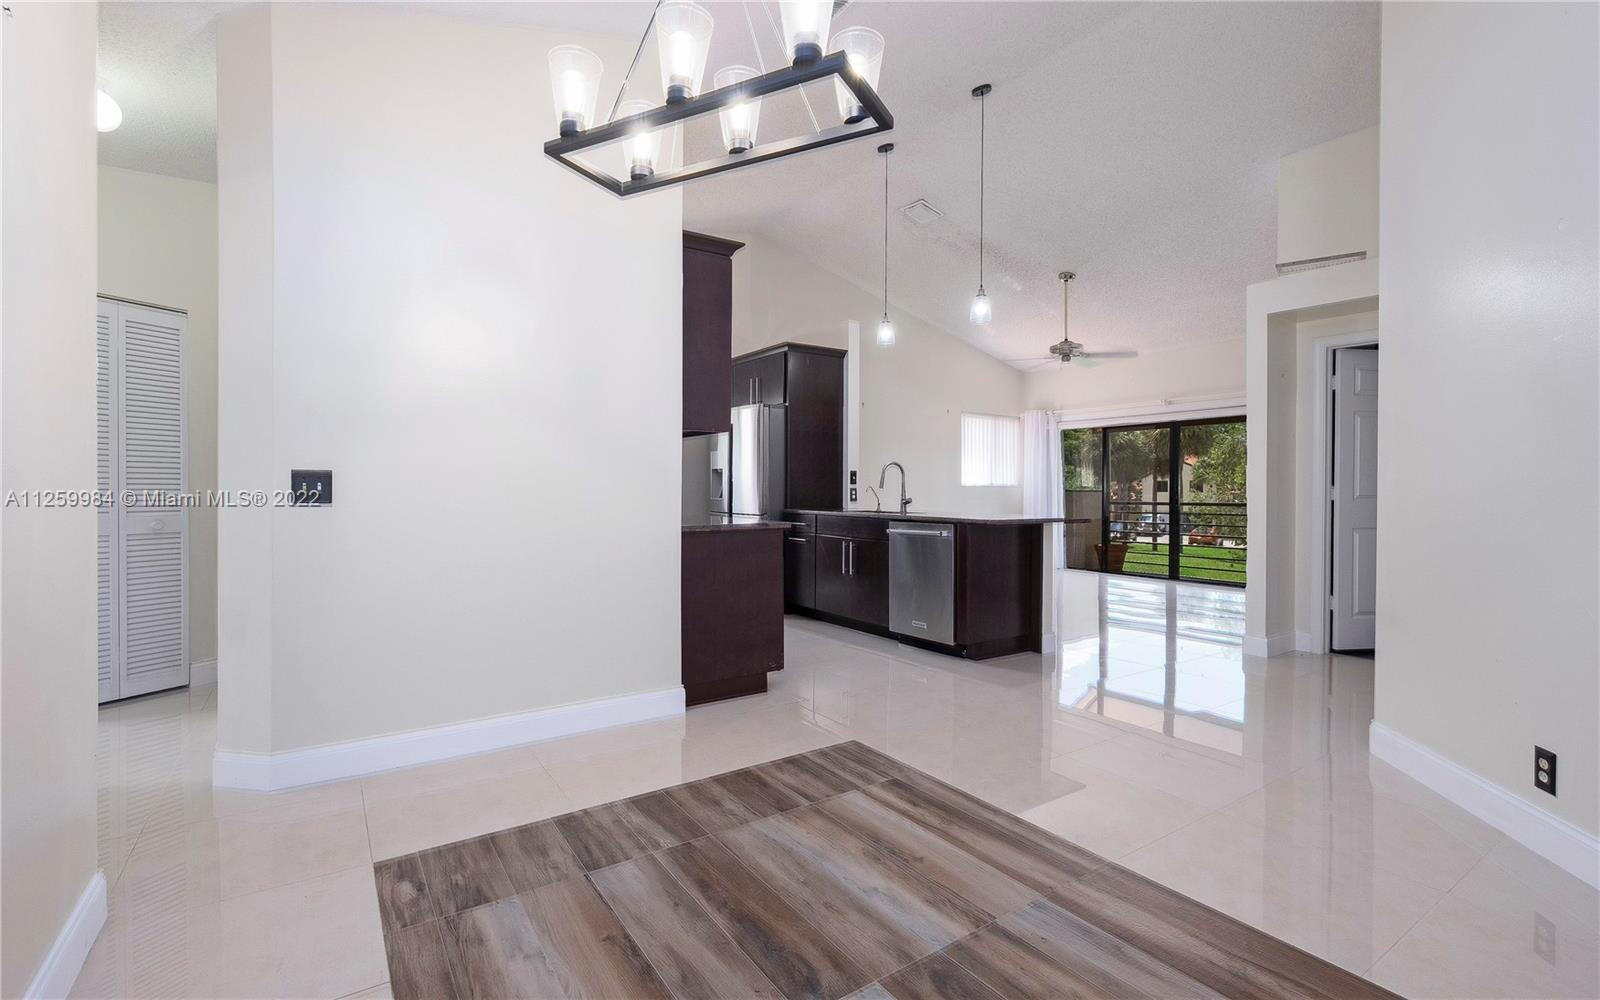 Property for Sale at 18 Via De Casas Sur 203, Boynton Beach, Palm Beach County, Florida - Bedrooms: 3 
Bathrooms: 2  - $285,000